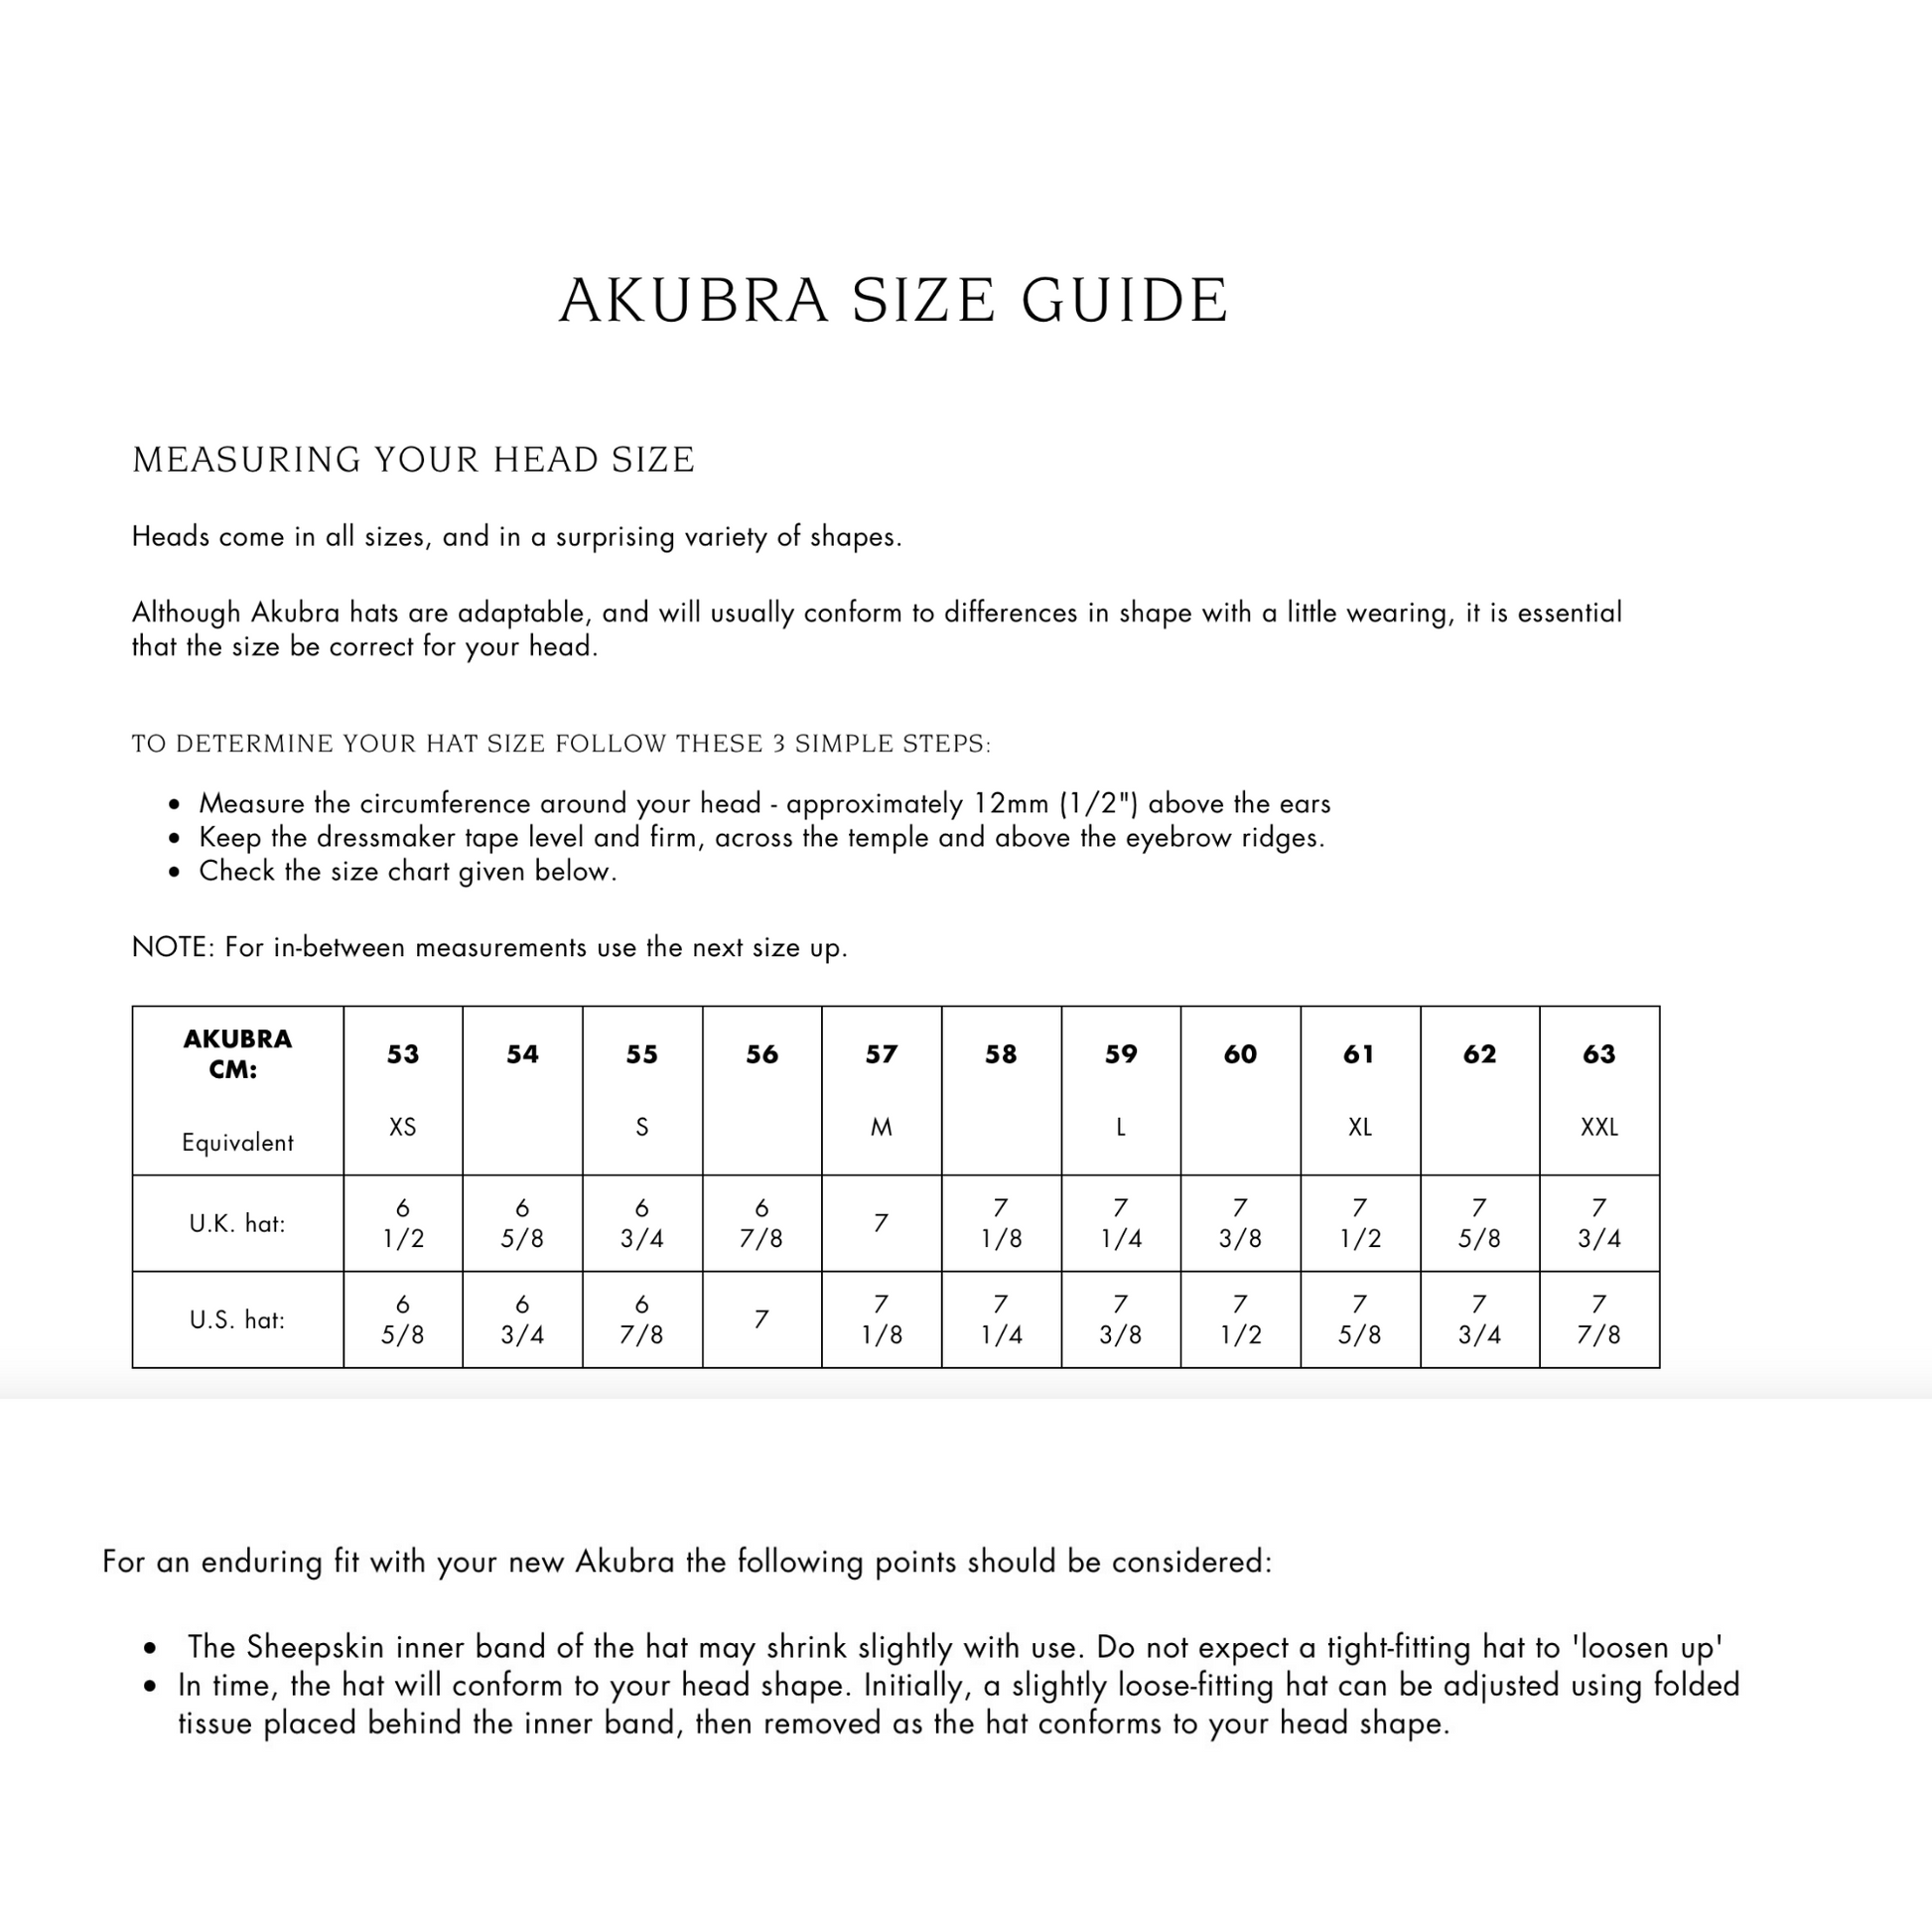 What size Akubra should I buy